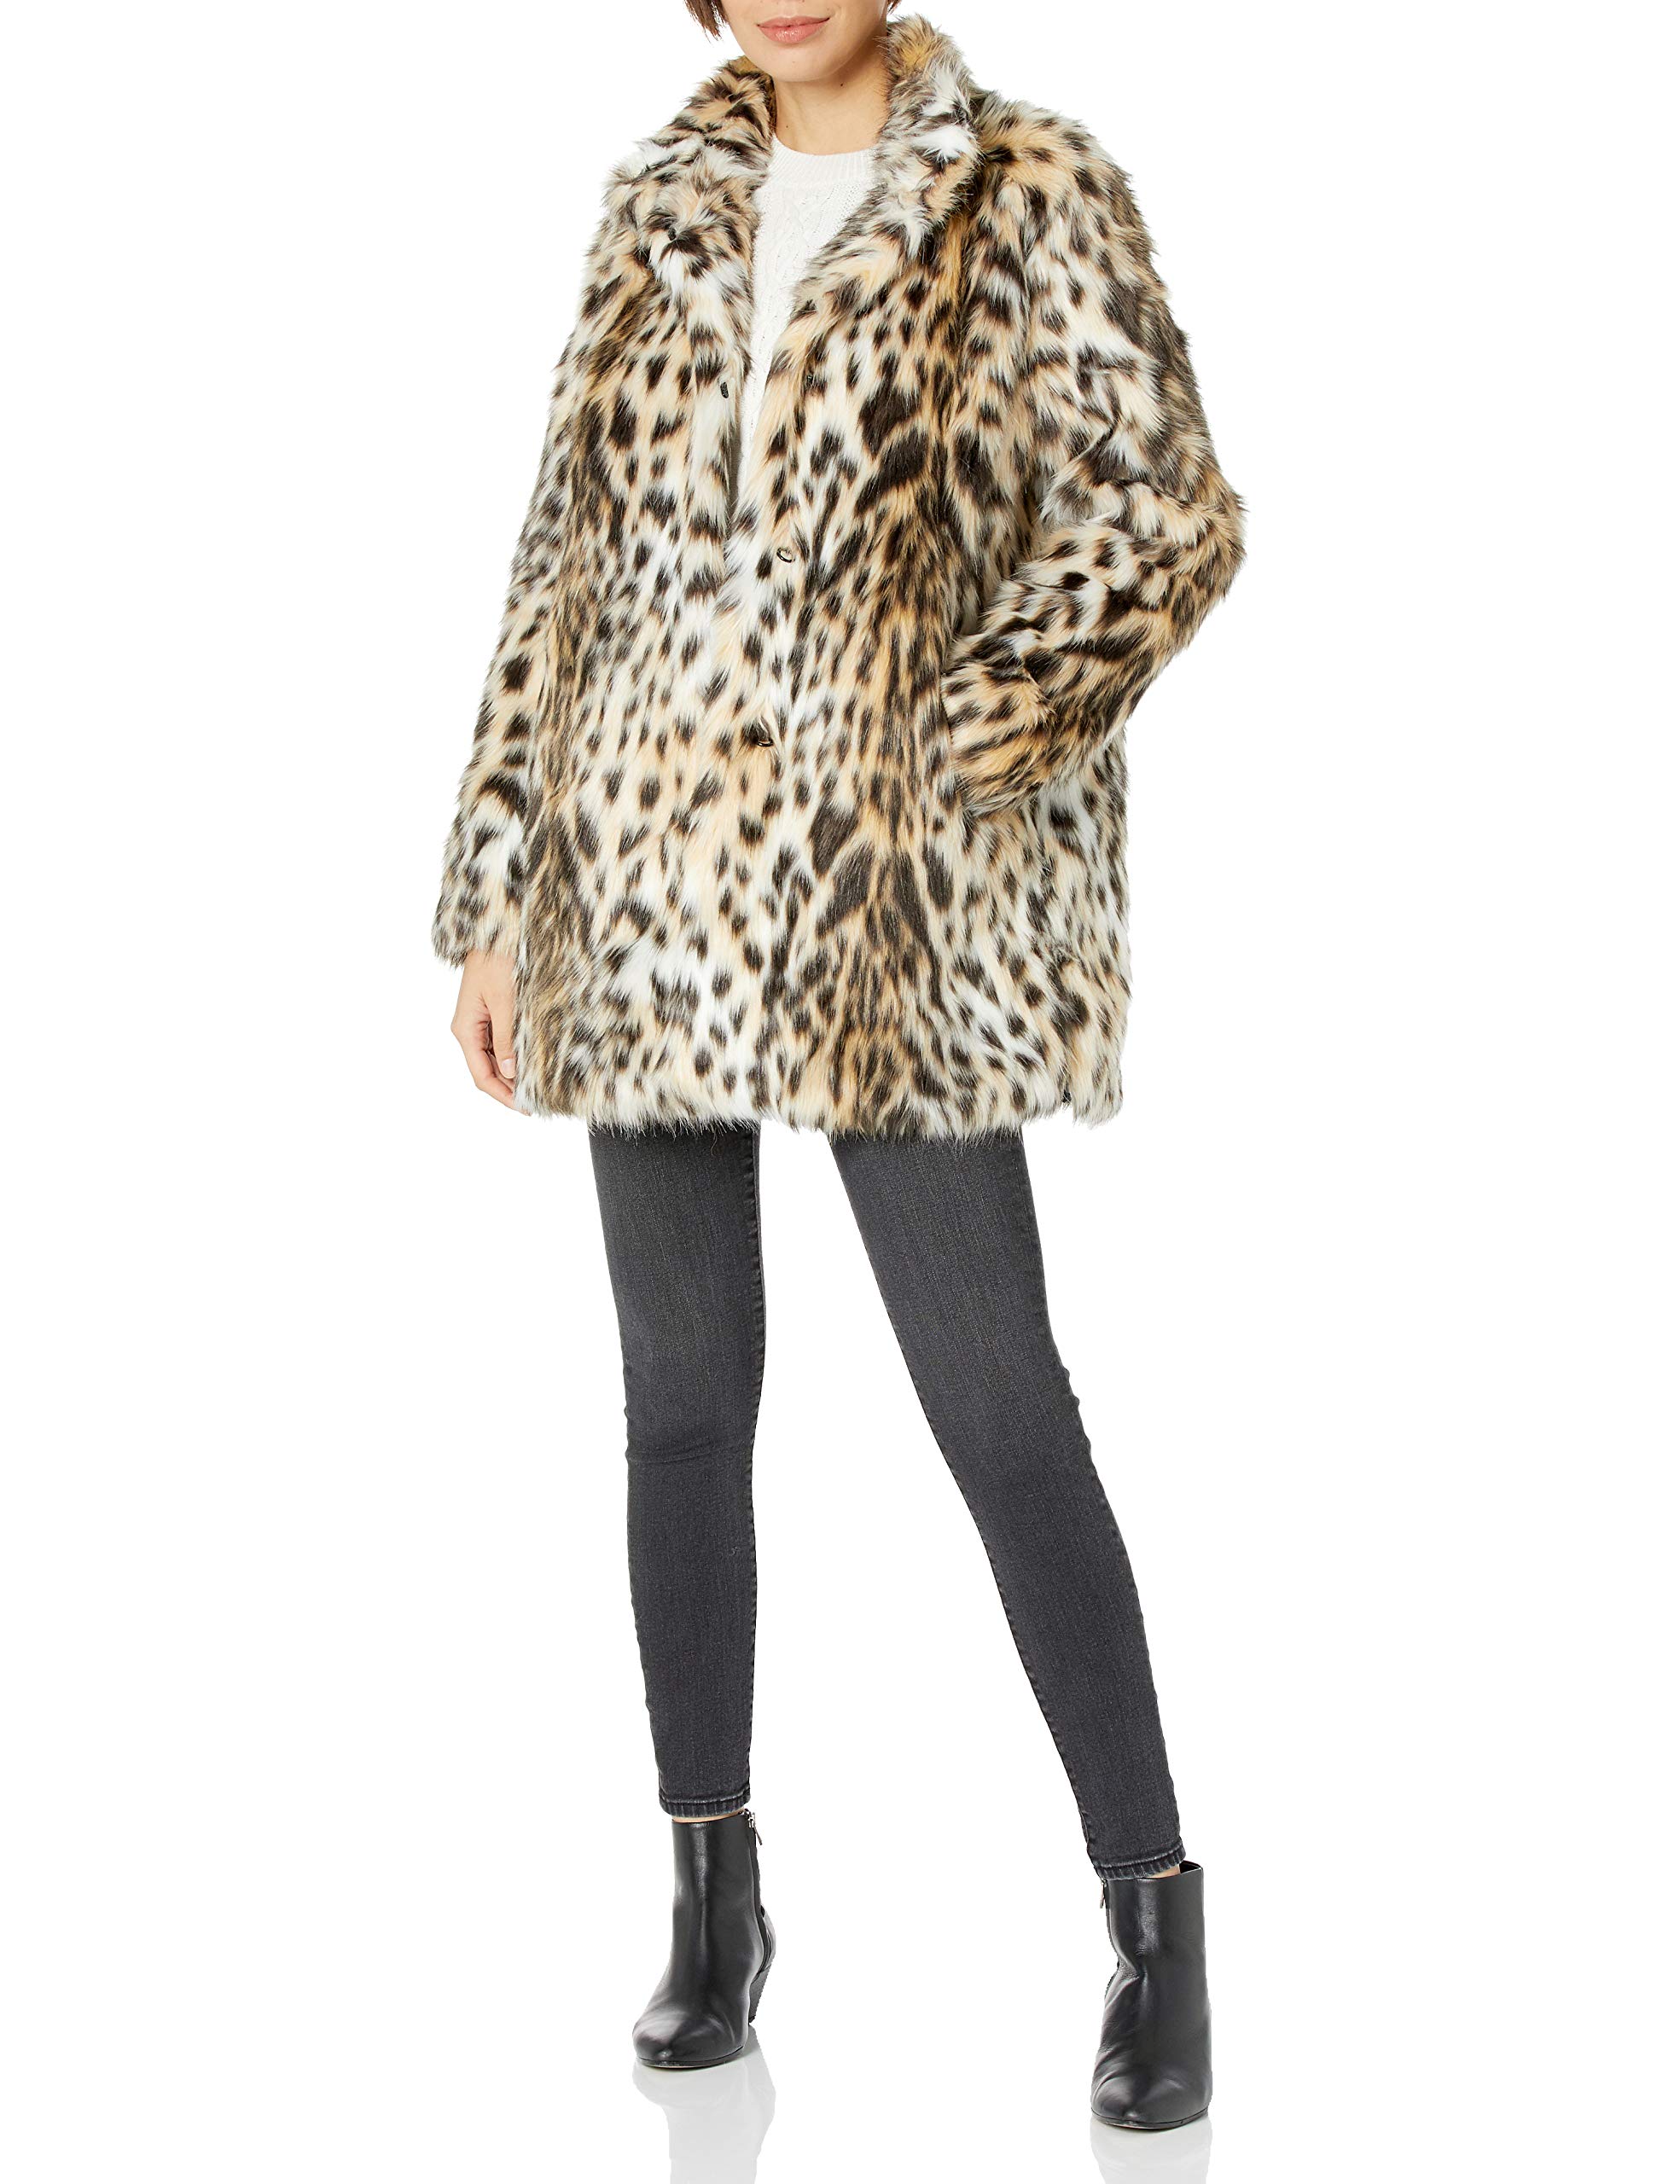 RACHEL Rachel Roy Women's Faux Fur Mid Length Coat